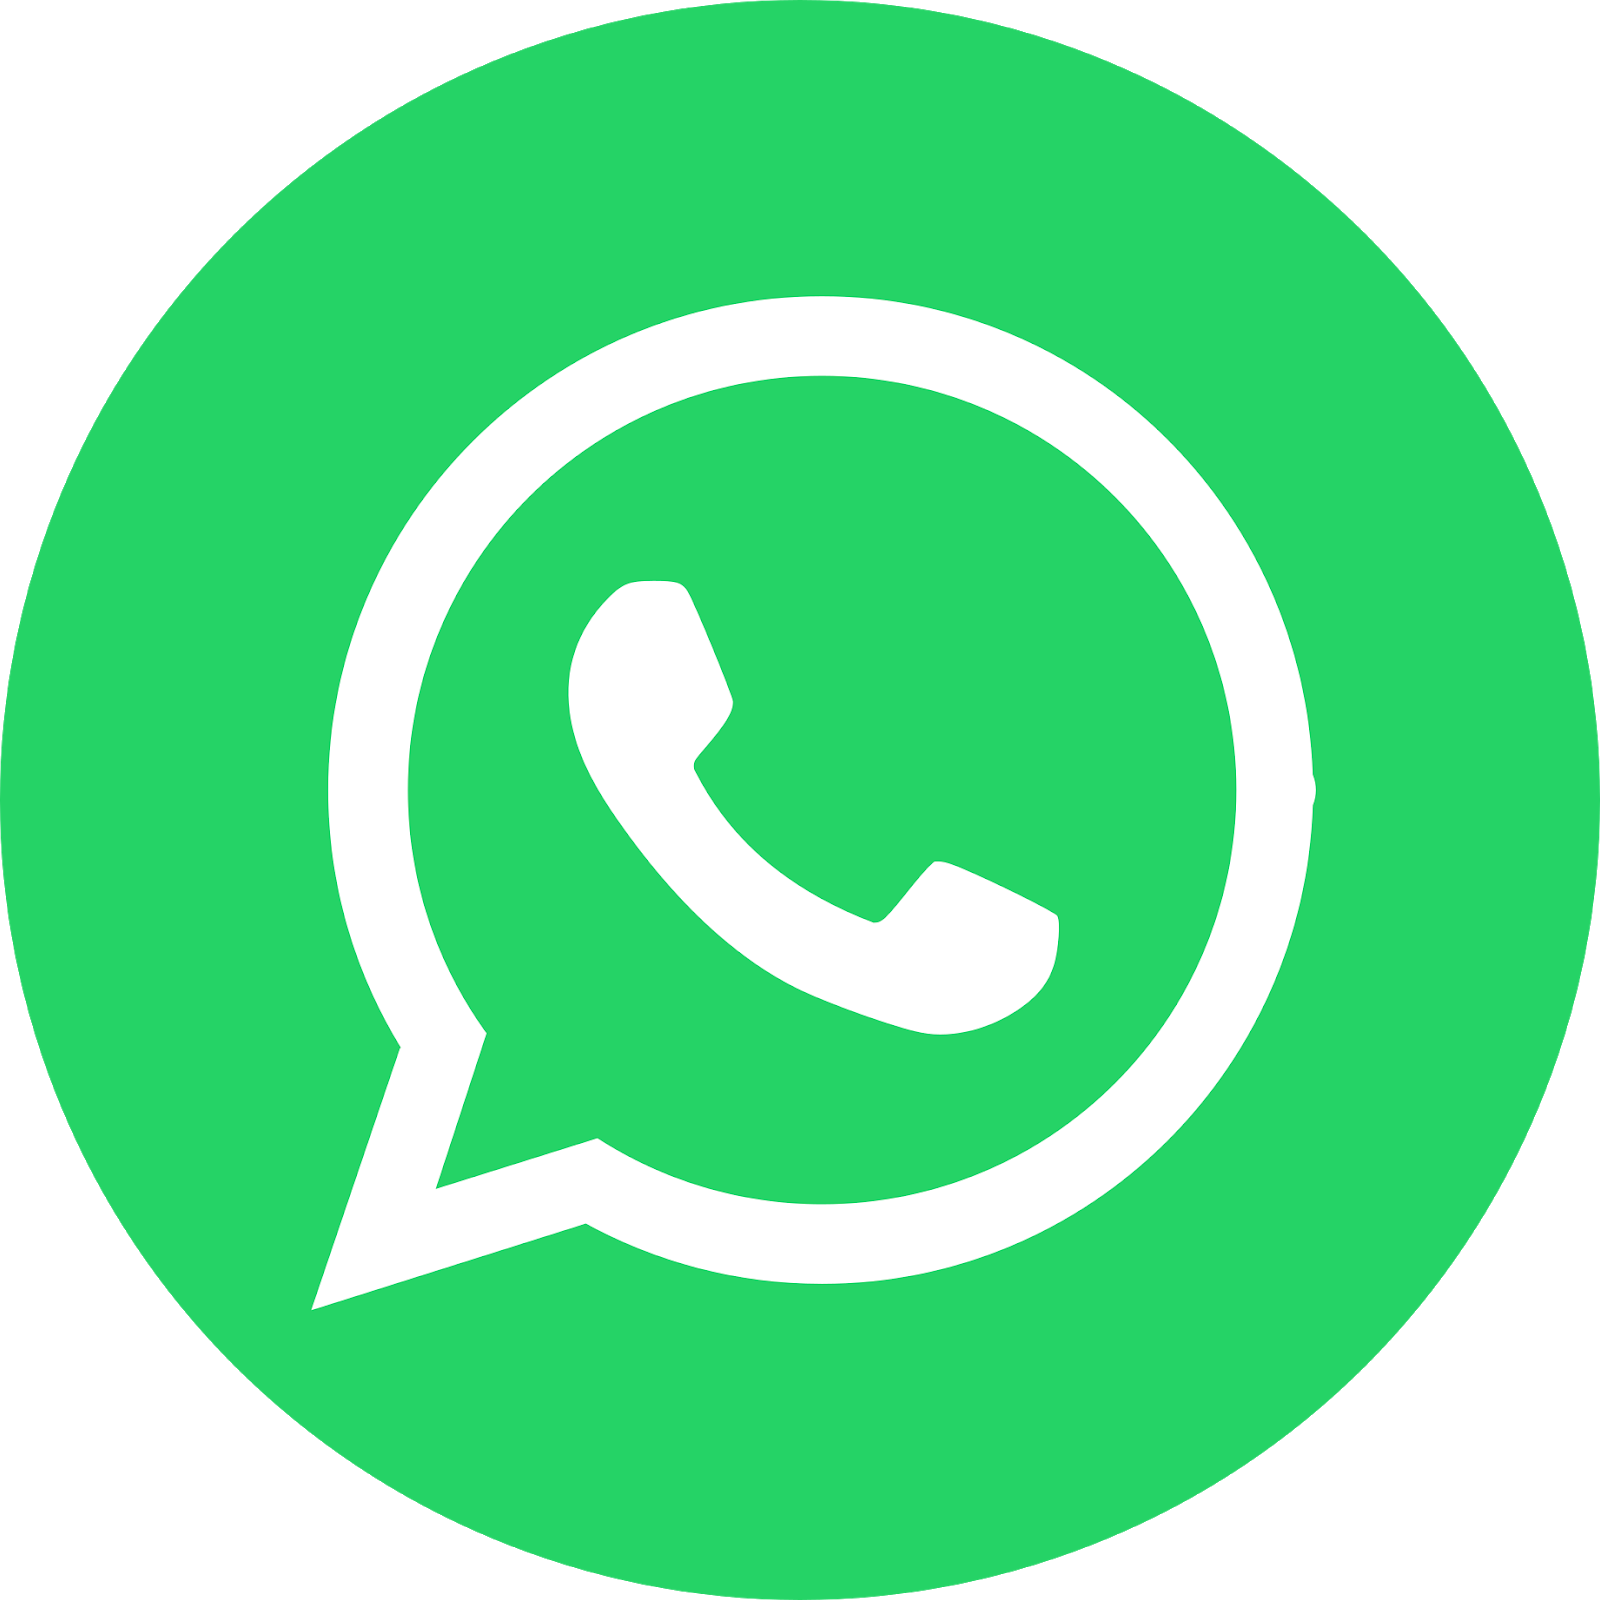 Download Free Whatsapp Logo Whatsapp Icon Whatsapp Logo Png